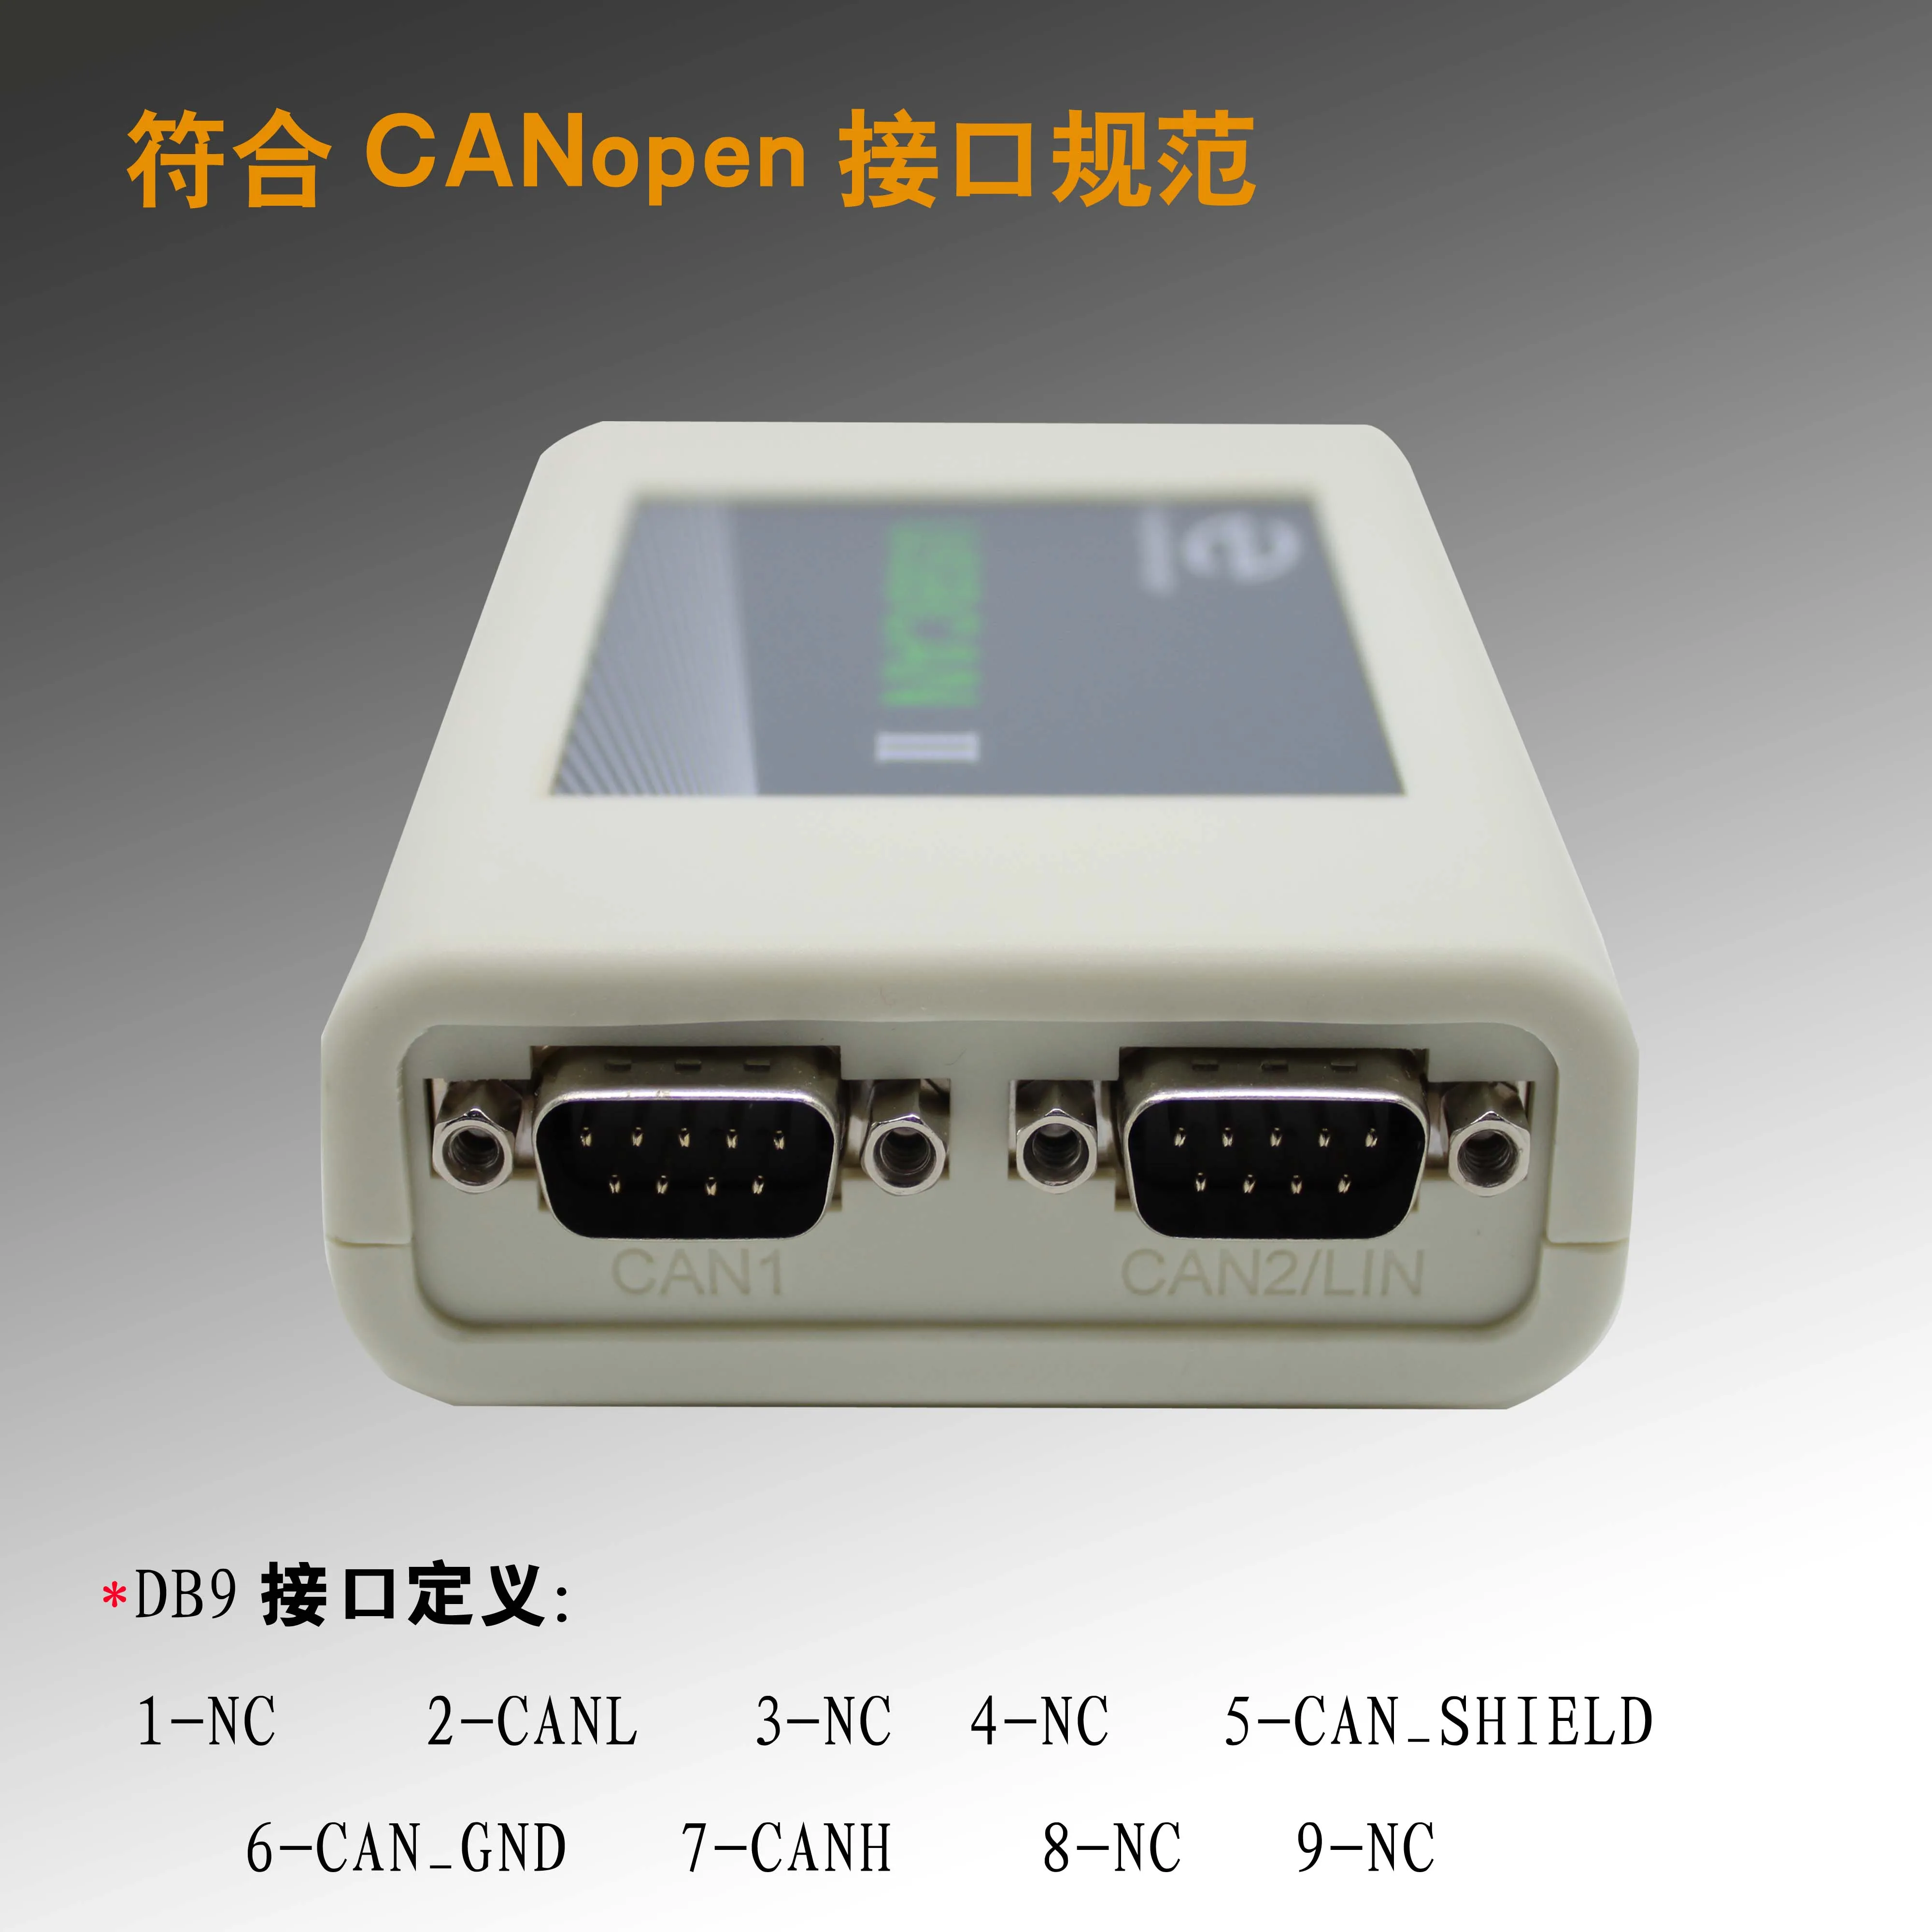 USBCAN II промышленный двухканальный может высокоскоростной прием поддержка может реле автономной передачи